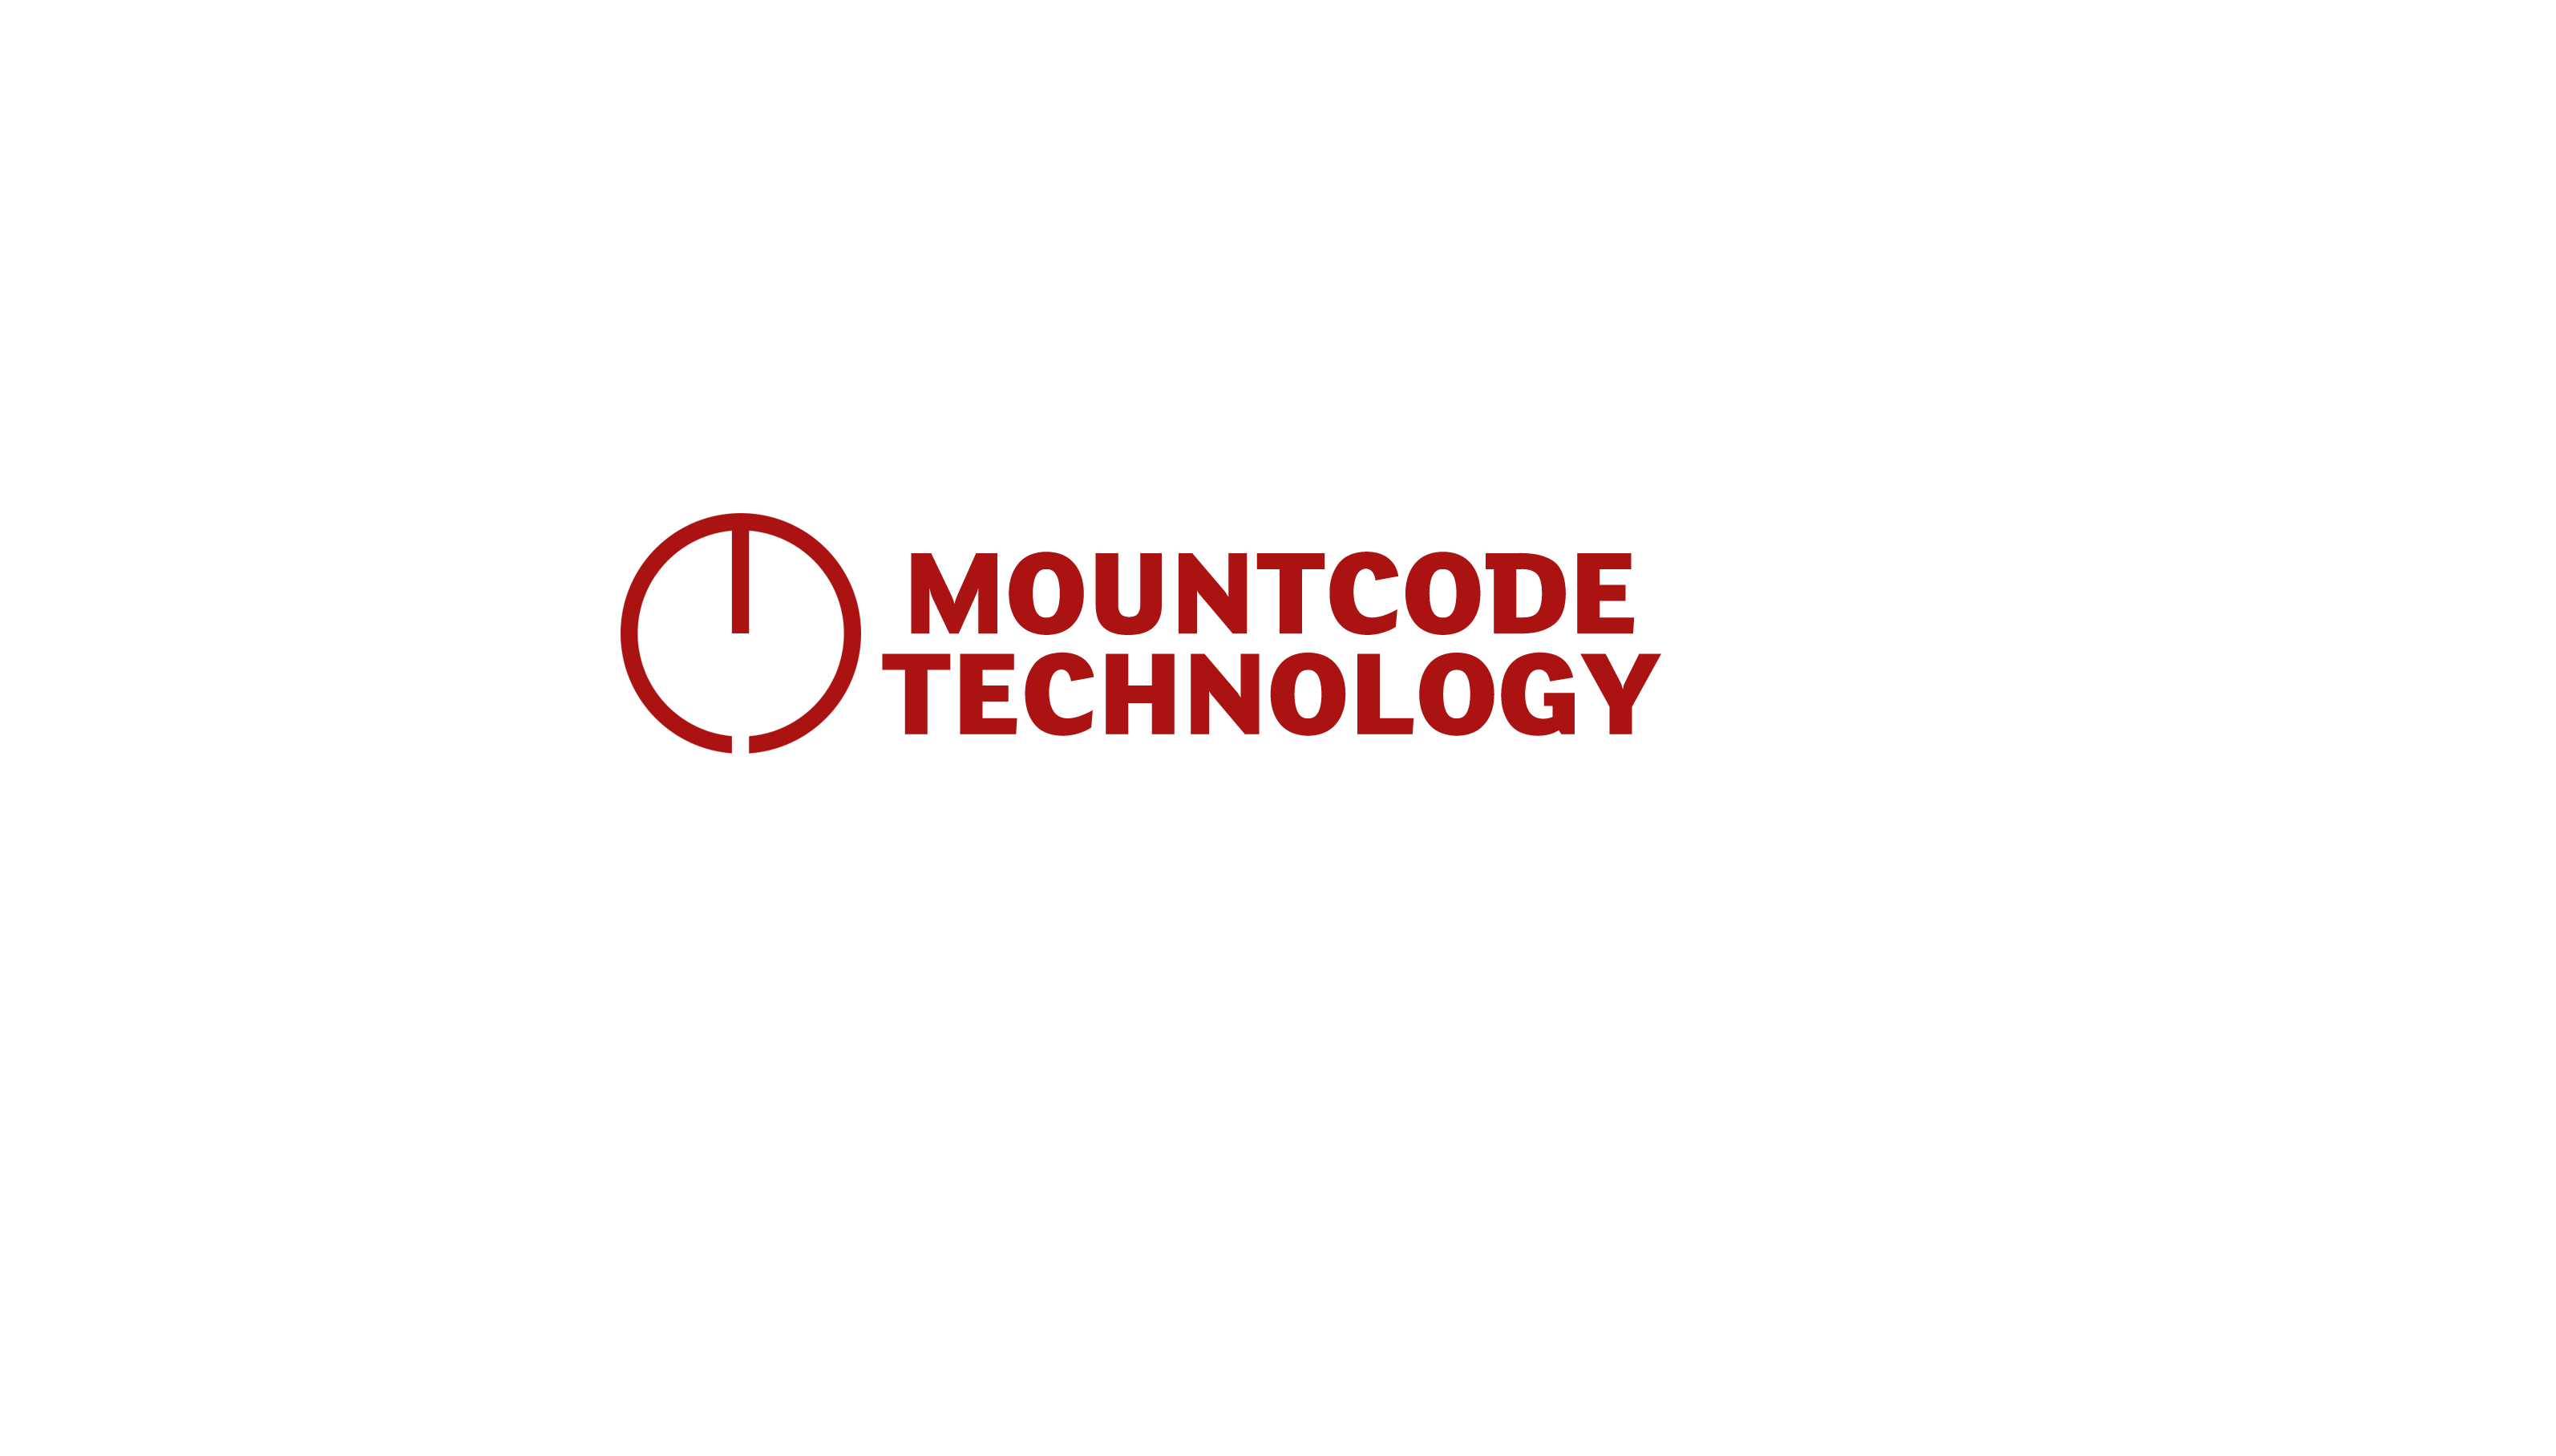 Mountcode Technology